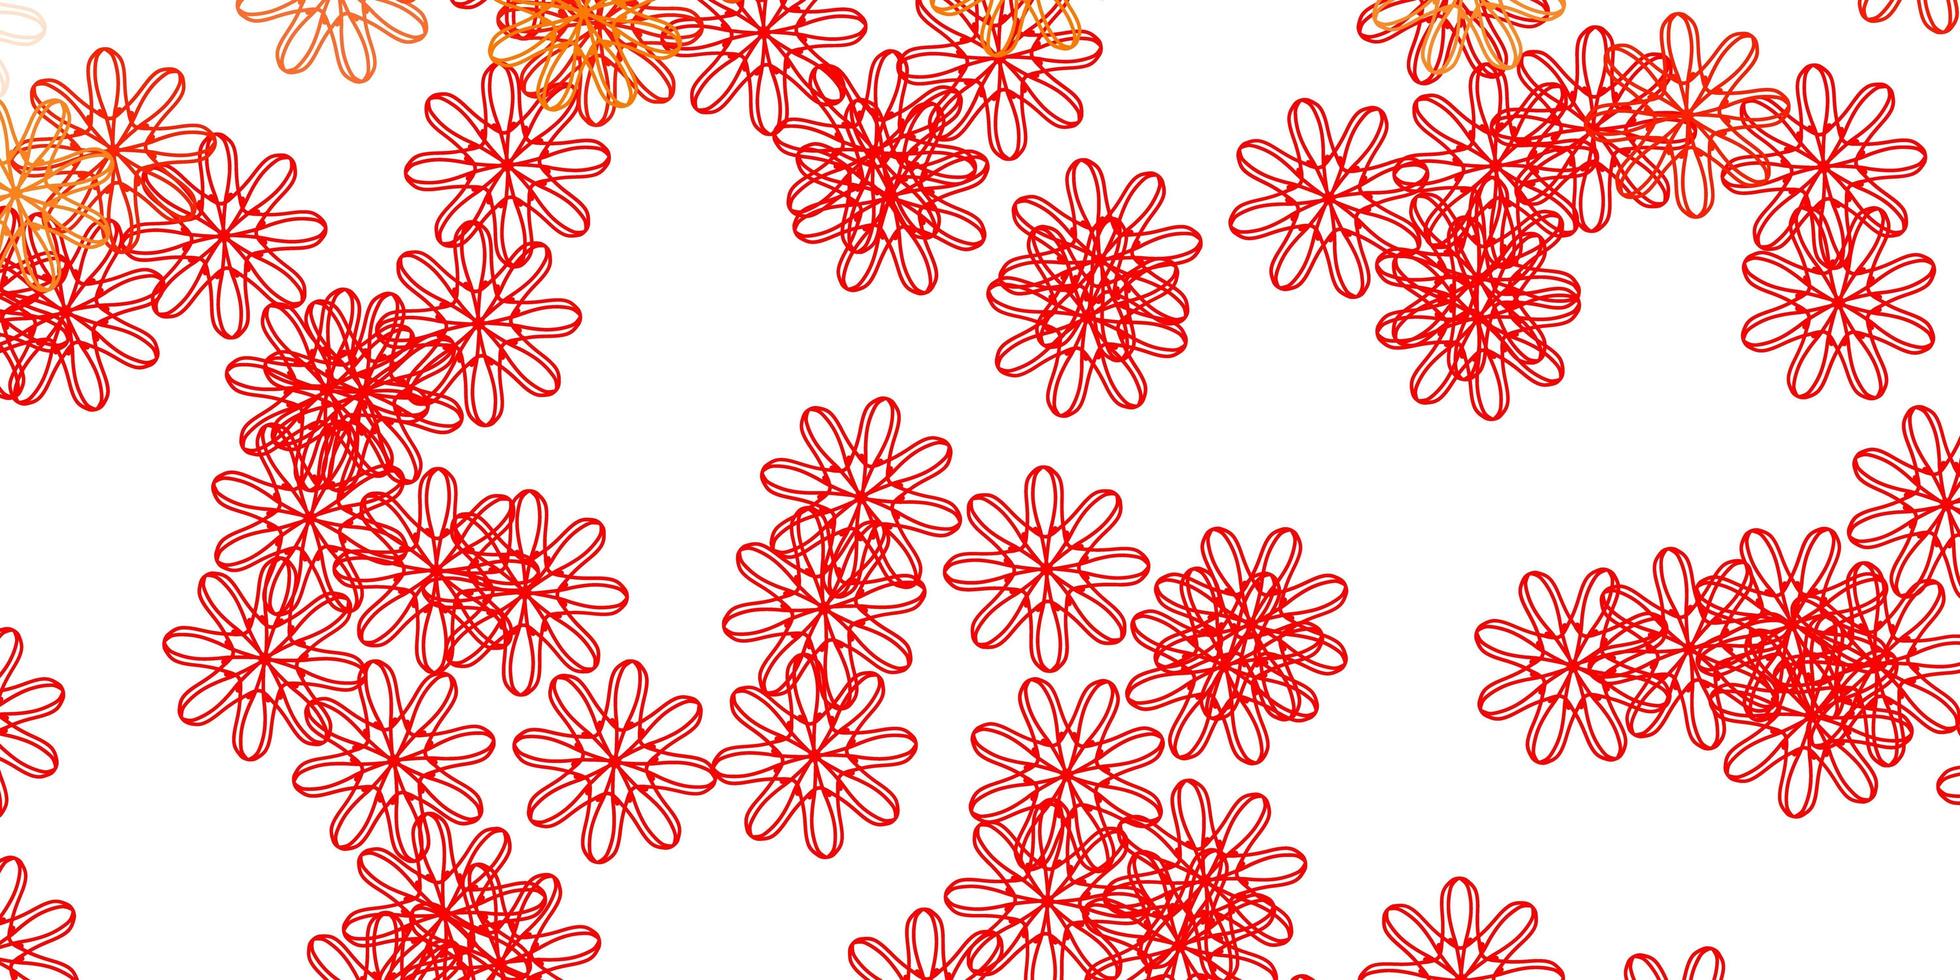 sfondo naturale vettoriale rosso chiaro con fiori